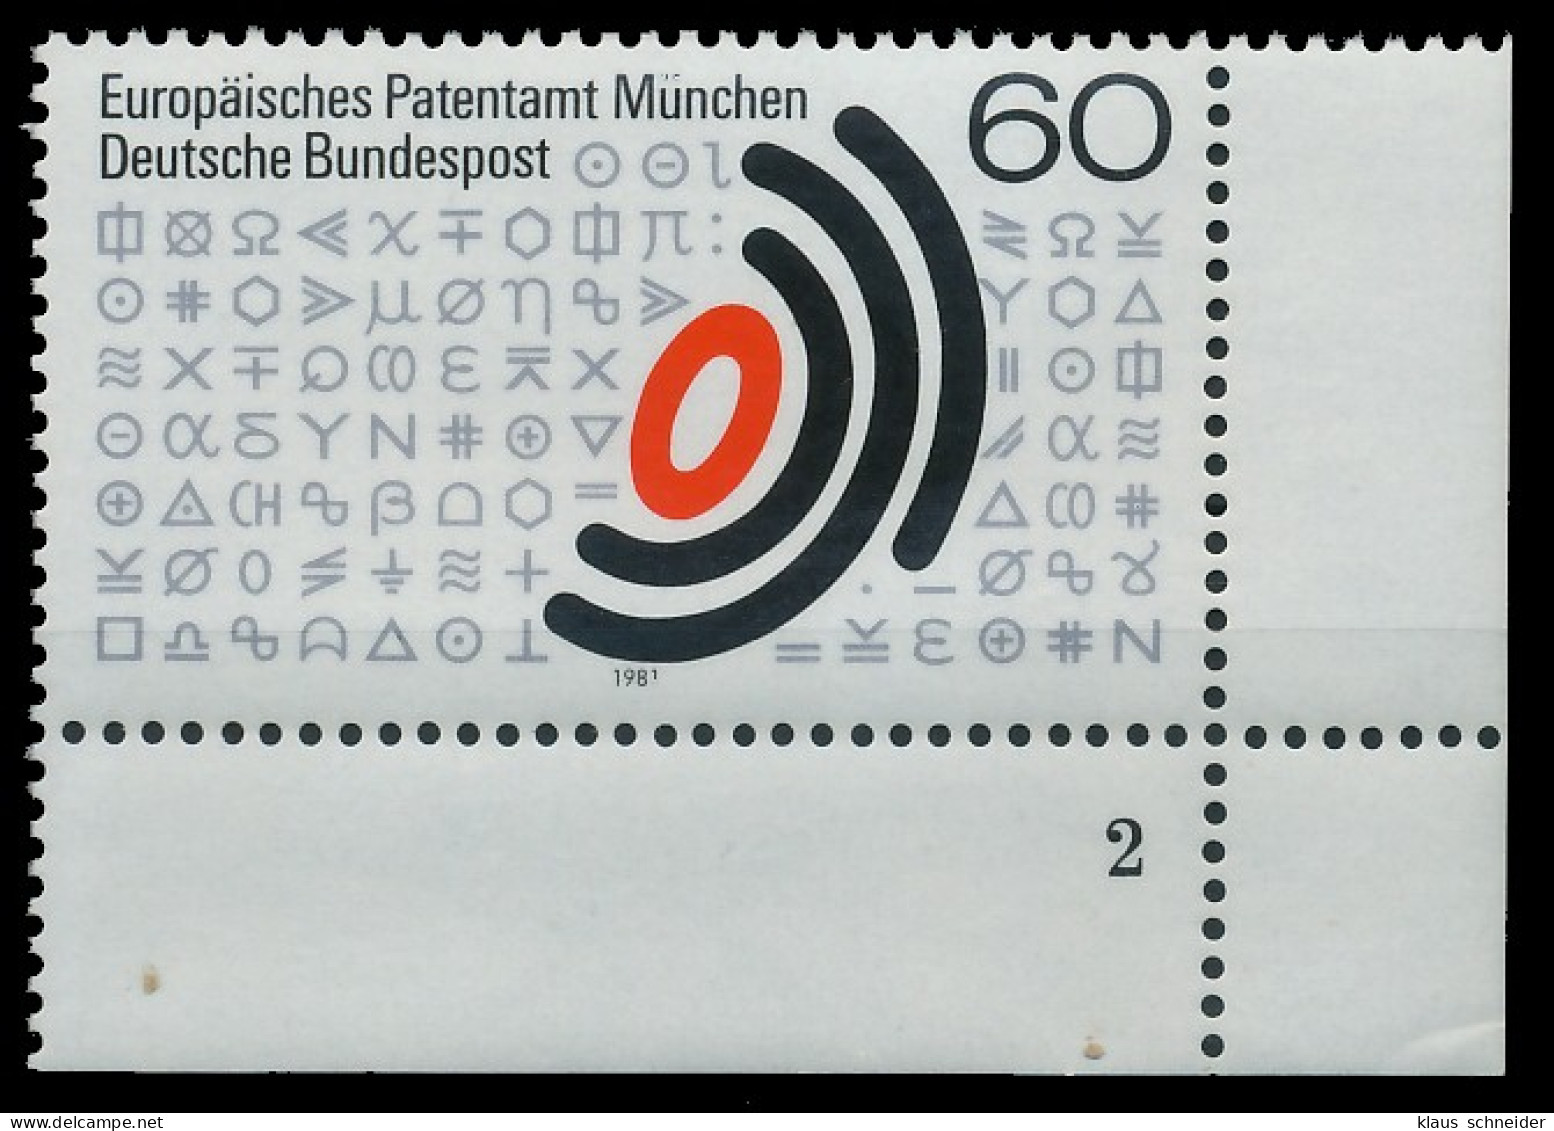 BRD BUND 1981 Nr 1088 Postfrisch FORMNUMMER 2 X3D67BA - Neufs